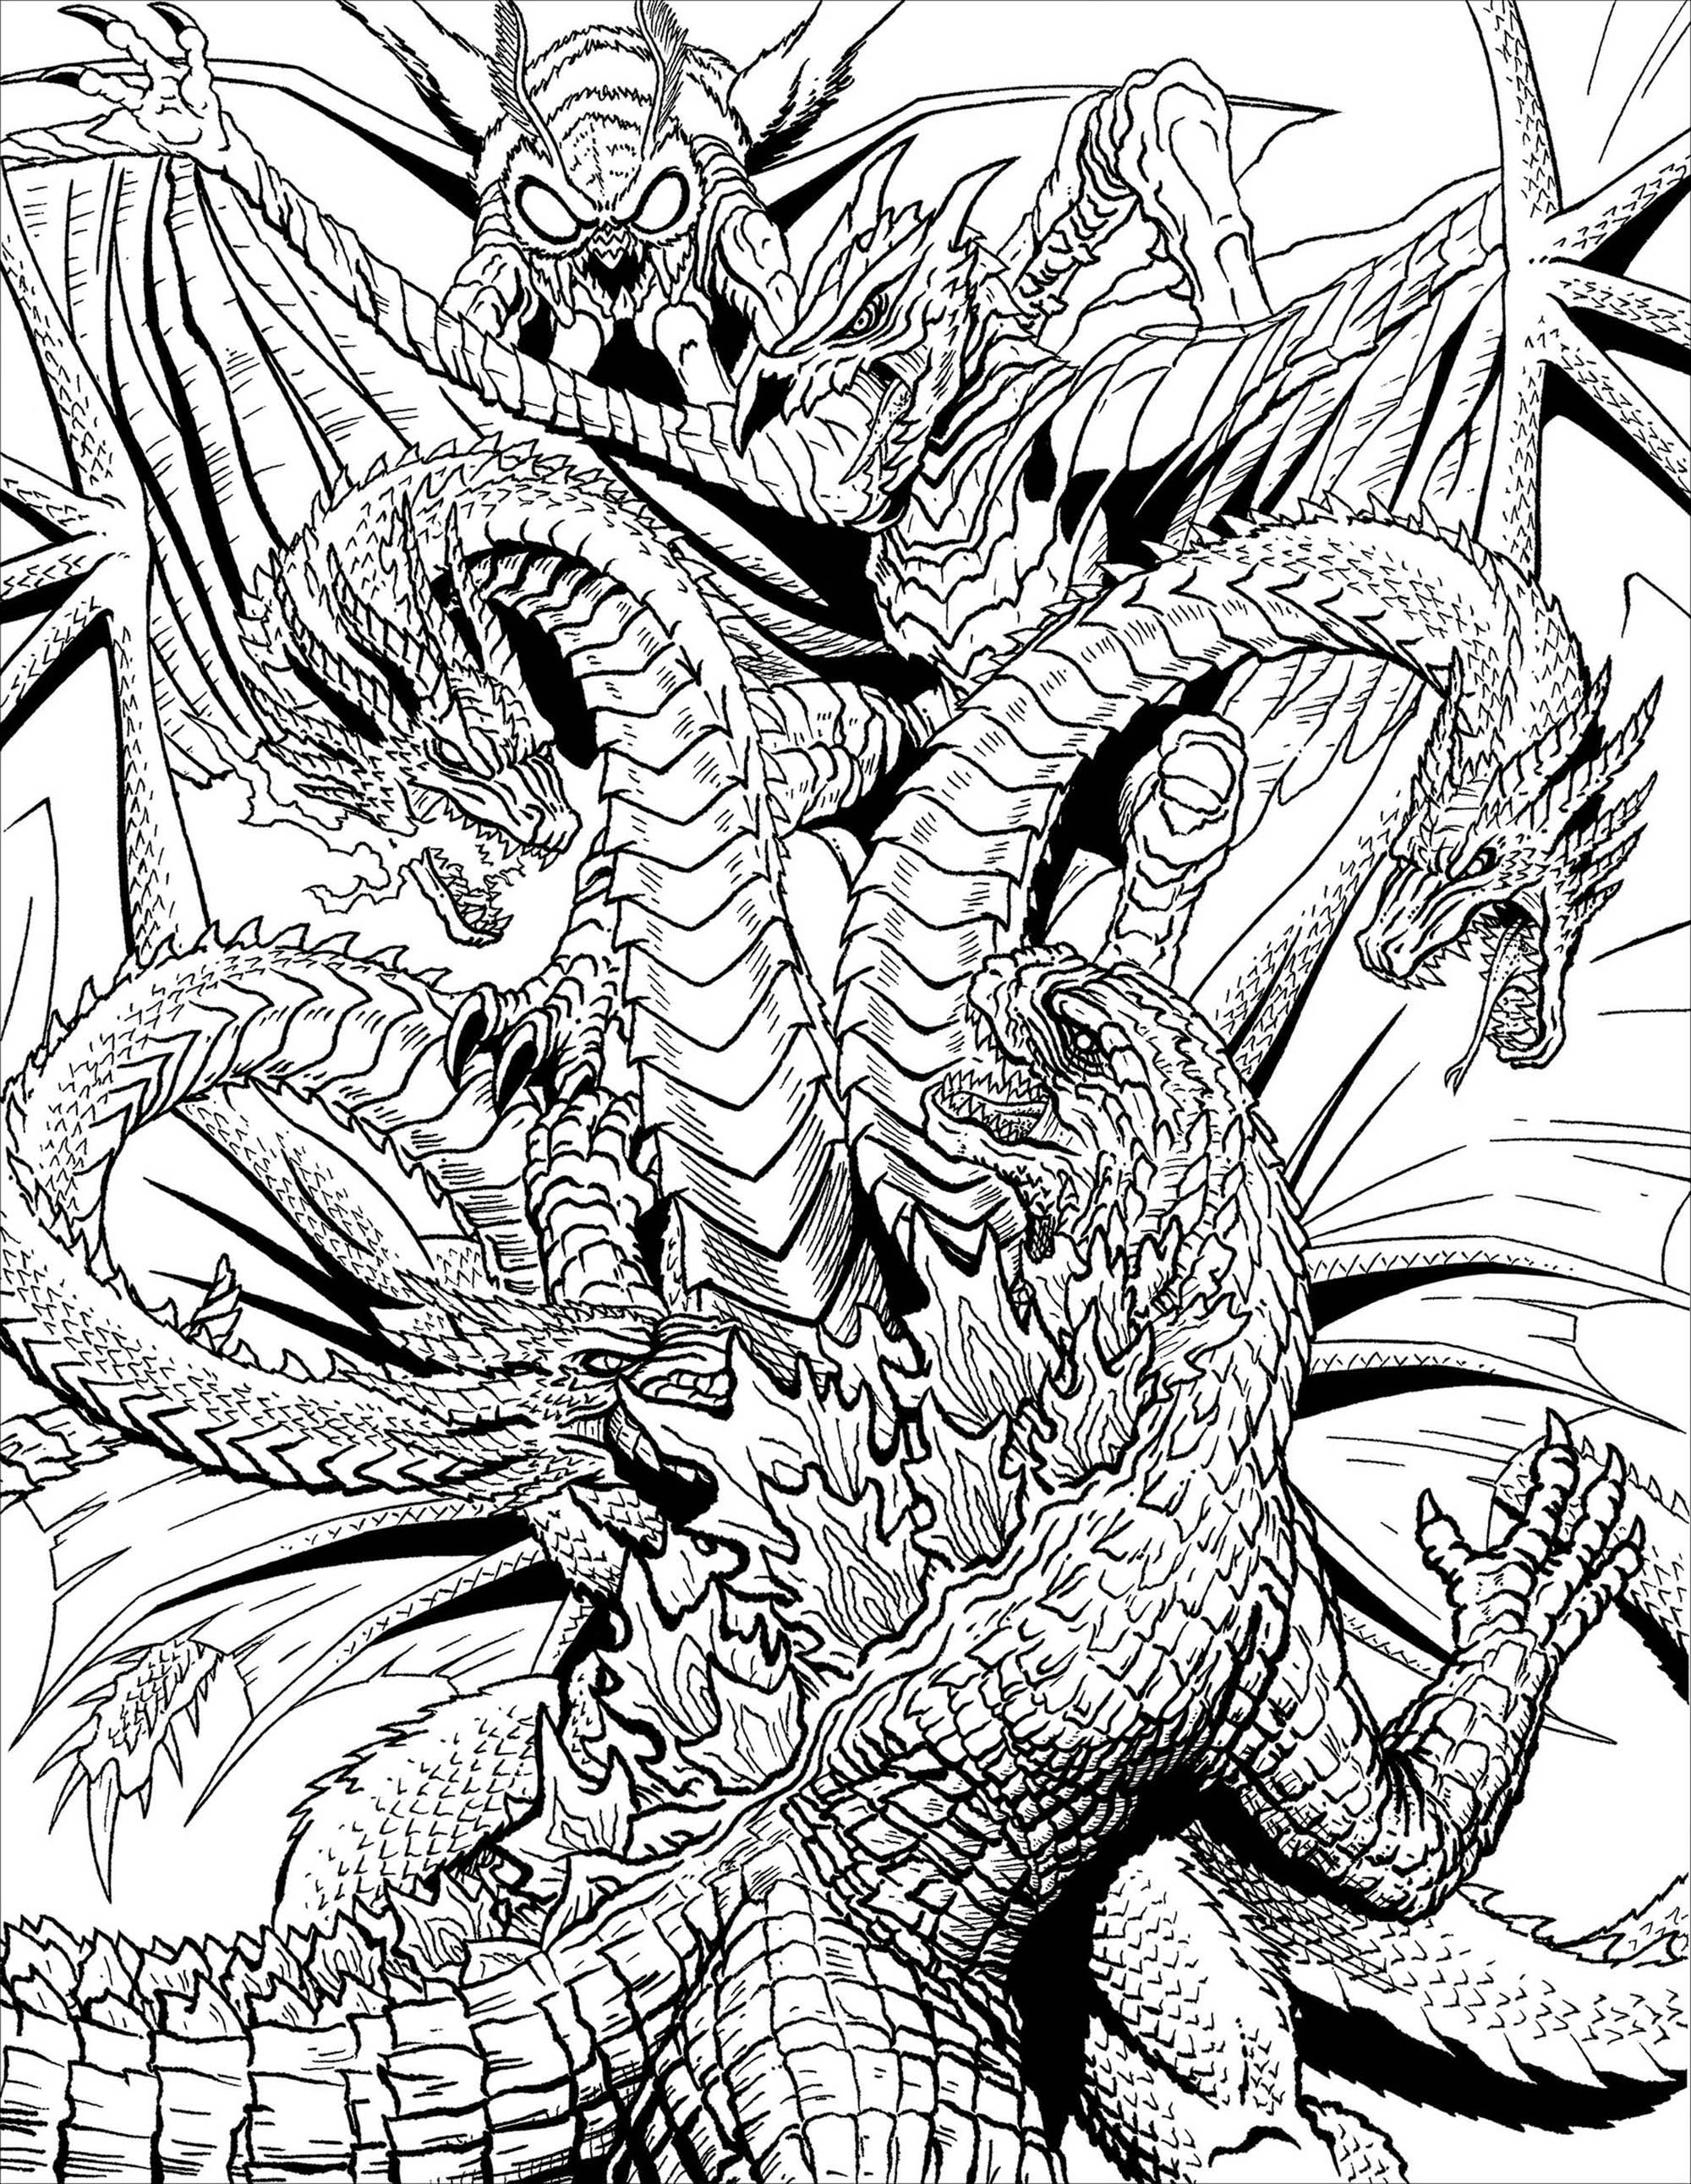 Com as suas 3 cabeças, este dragão não dá qualquer hipótese ao monstro!, Artista : Frank Parr